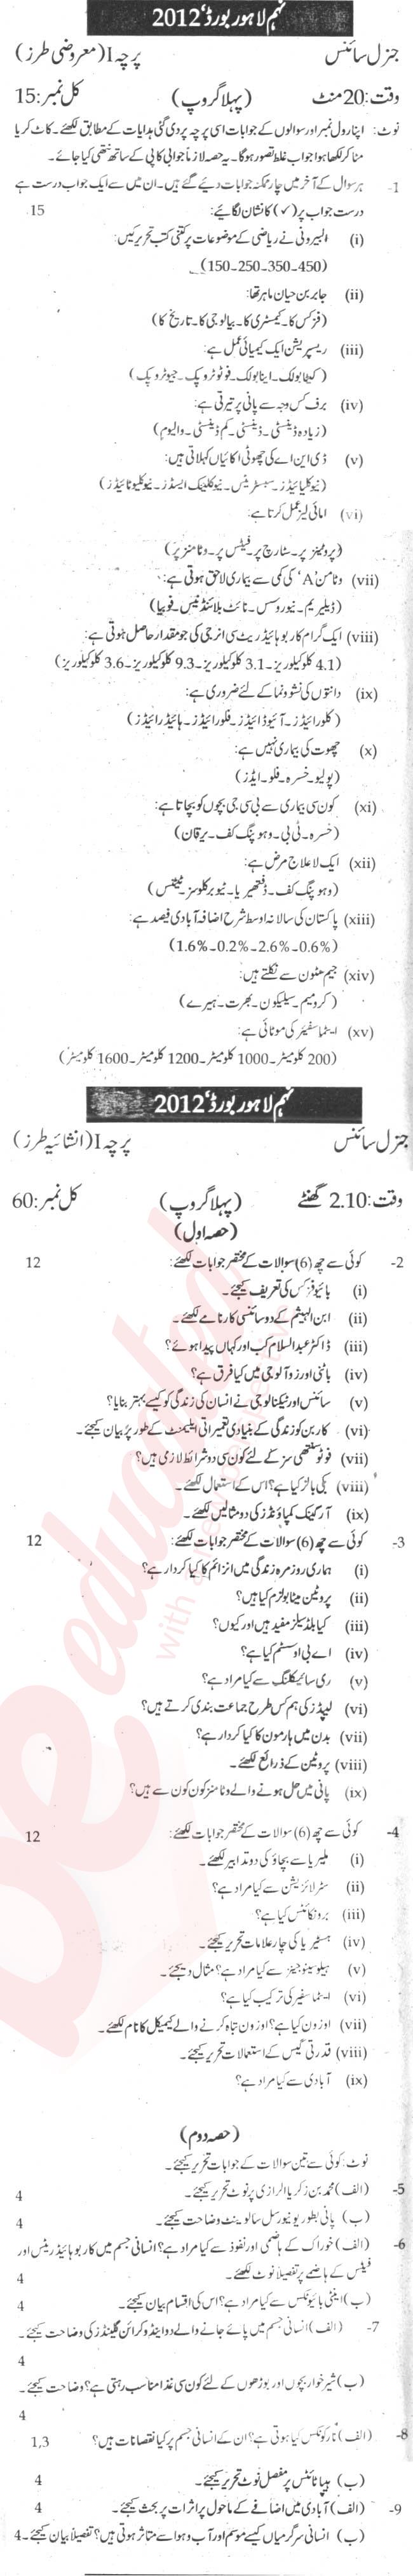 General Science 9th Urdu Medium Past Paper Group 1 BISE Lahore 2012